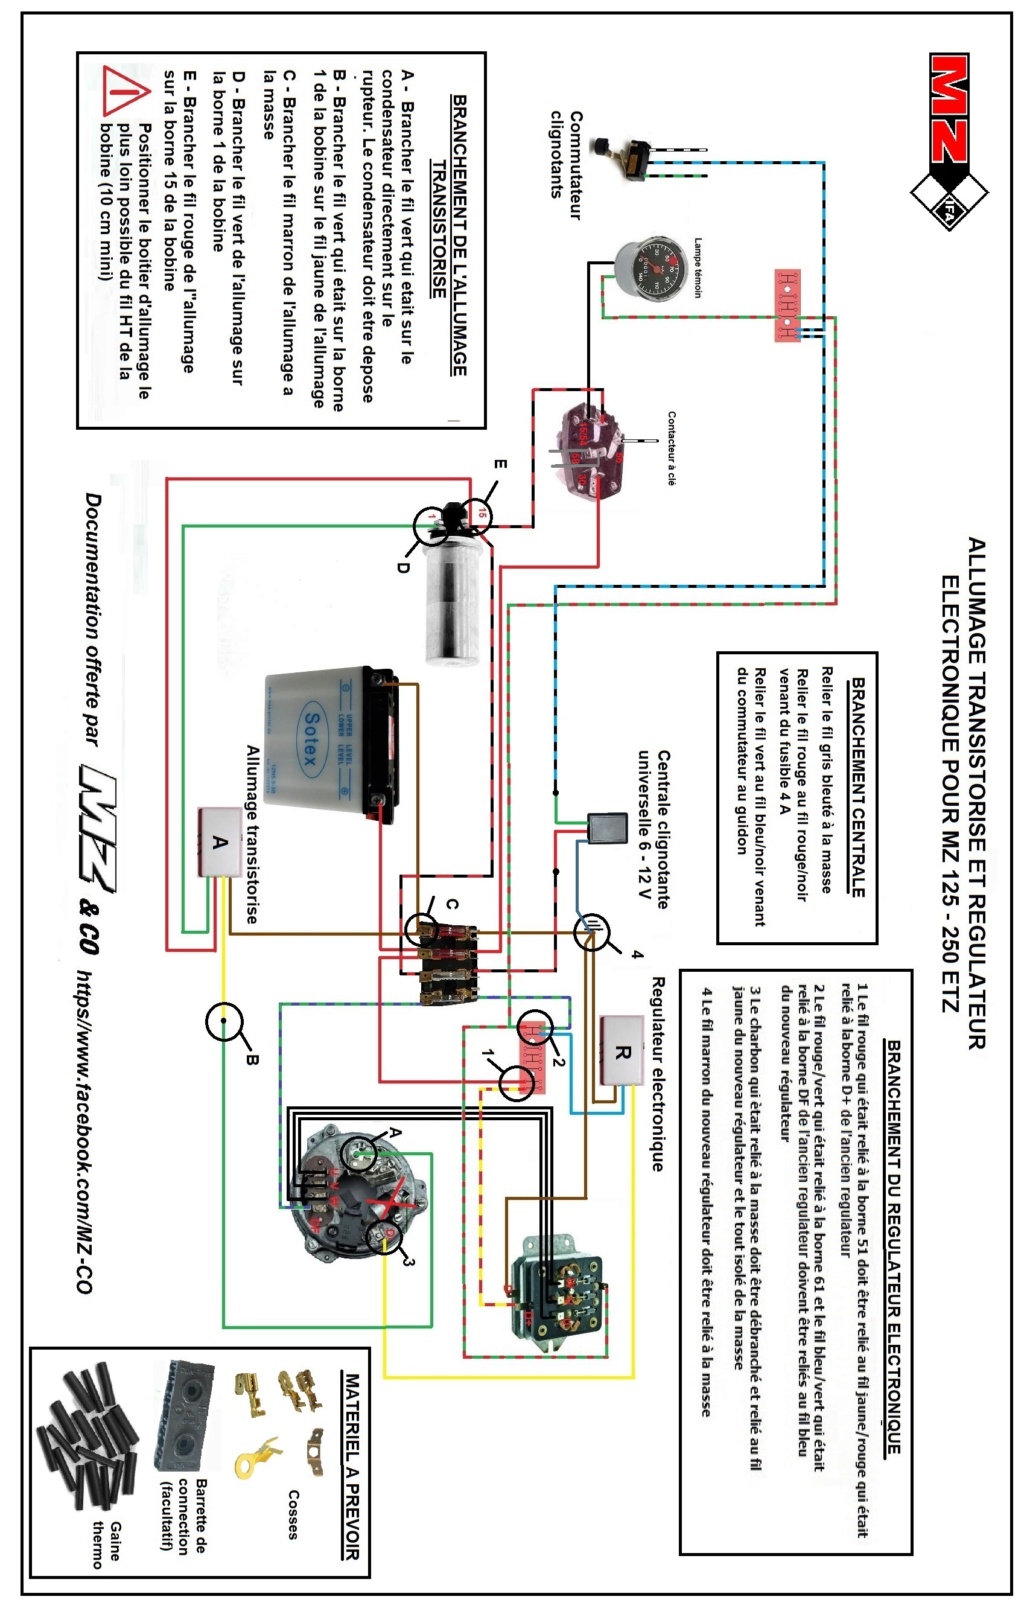 Circuit allumage électronique pour rupteur - Page 5 Circui26